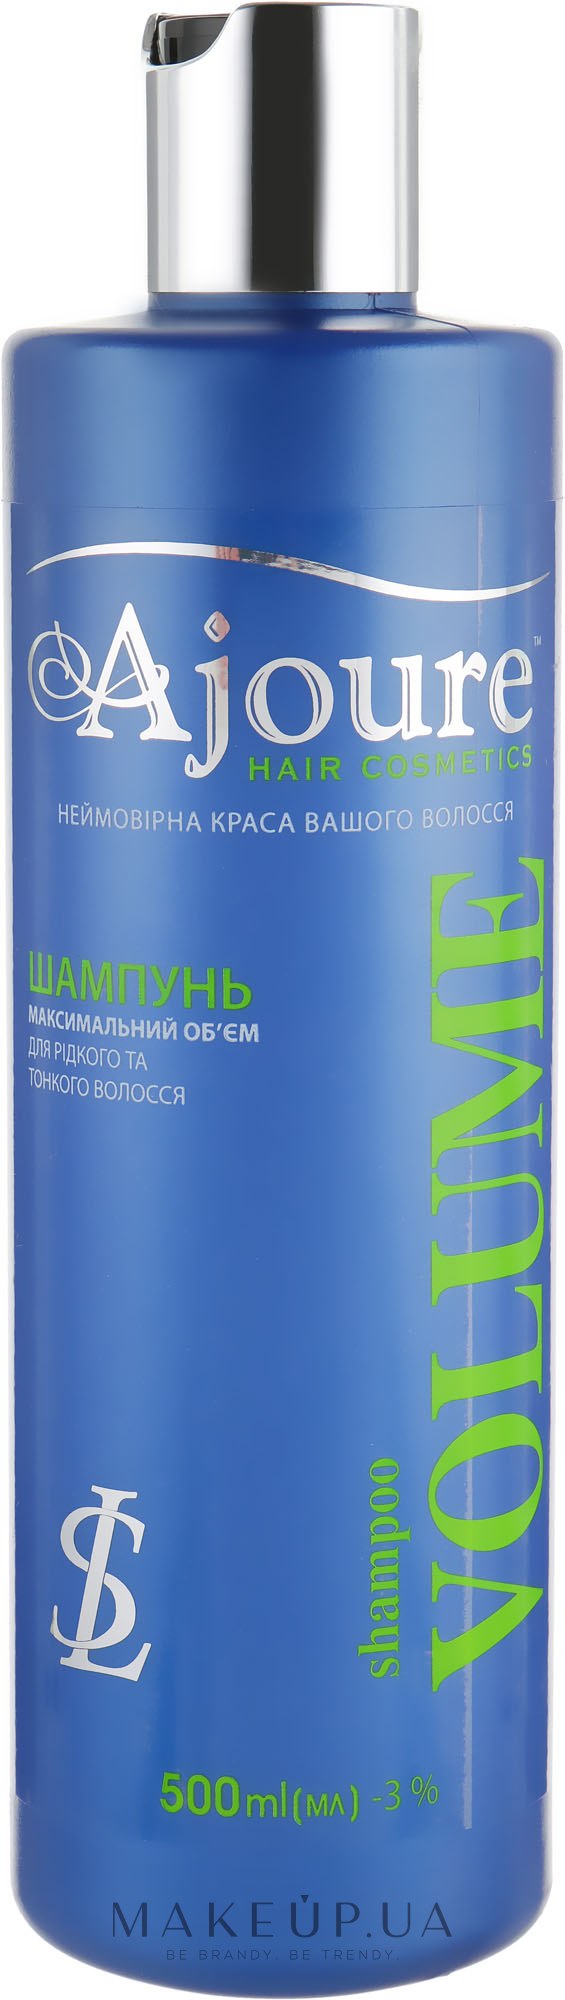 Шампунь "Максимальний об'єм" для рідкого і тонкого волосся - Ajoure Volume Shampoo — фото 500ml